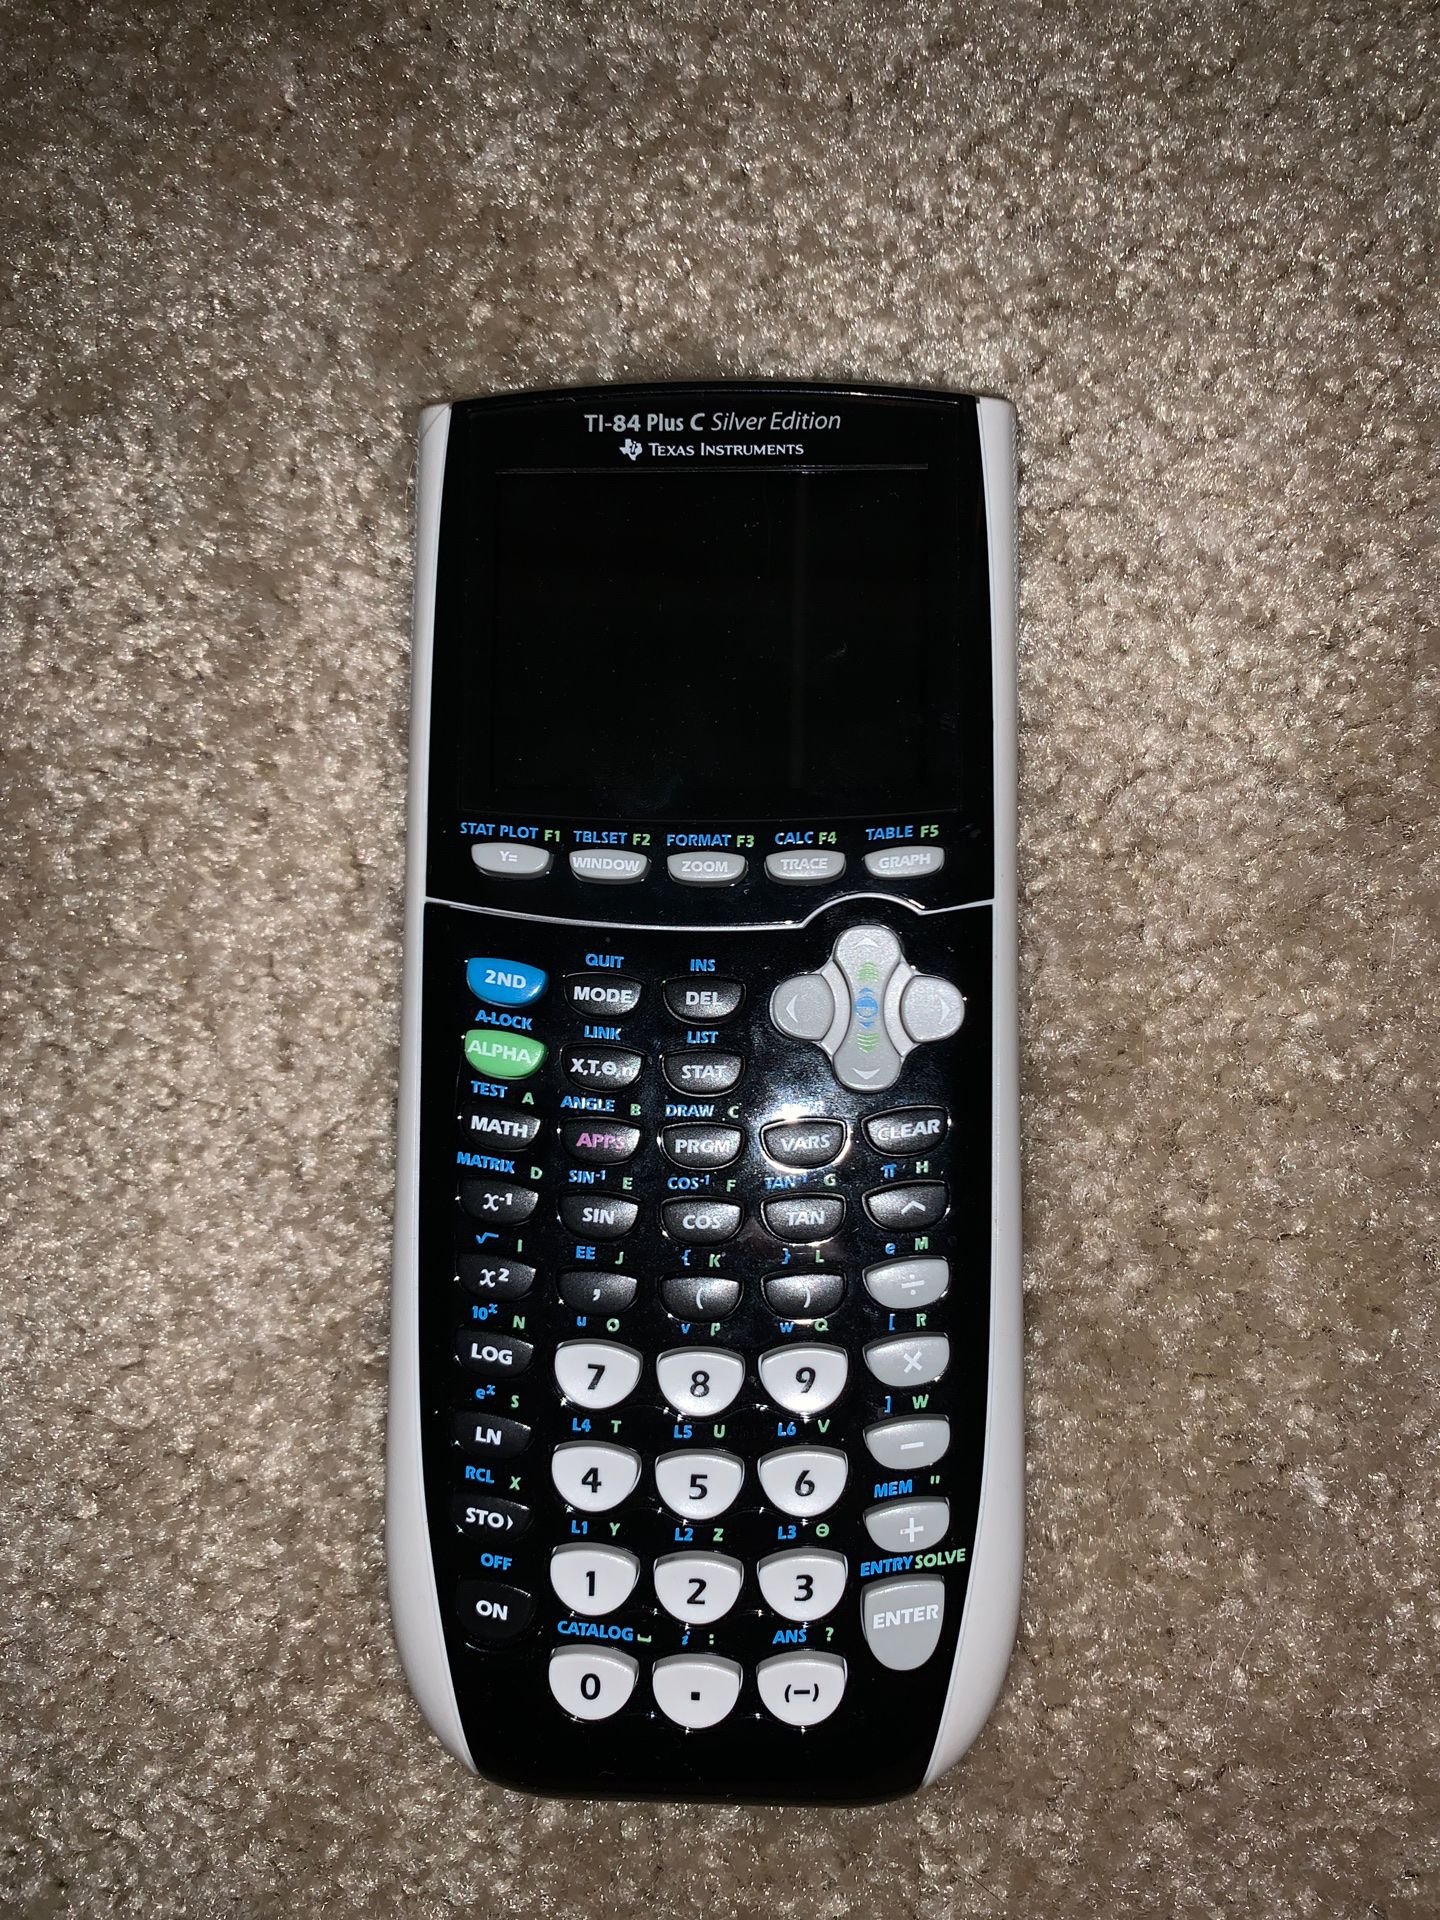 TI - 84 Plus C Silver Edition Calculator